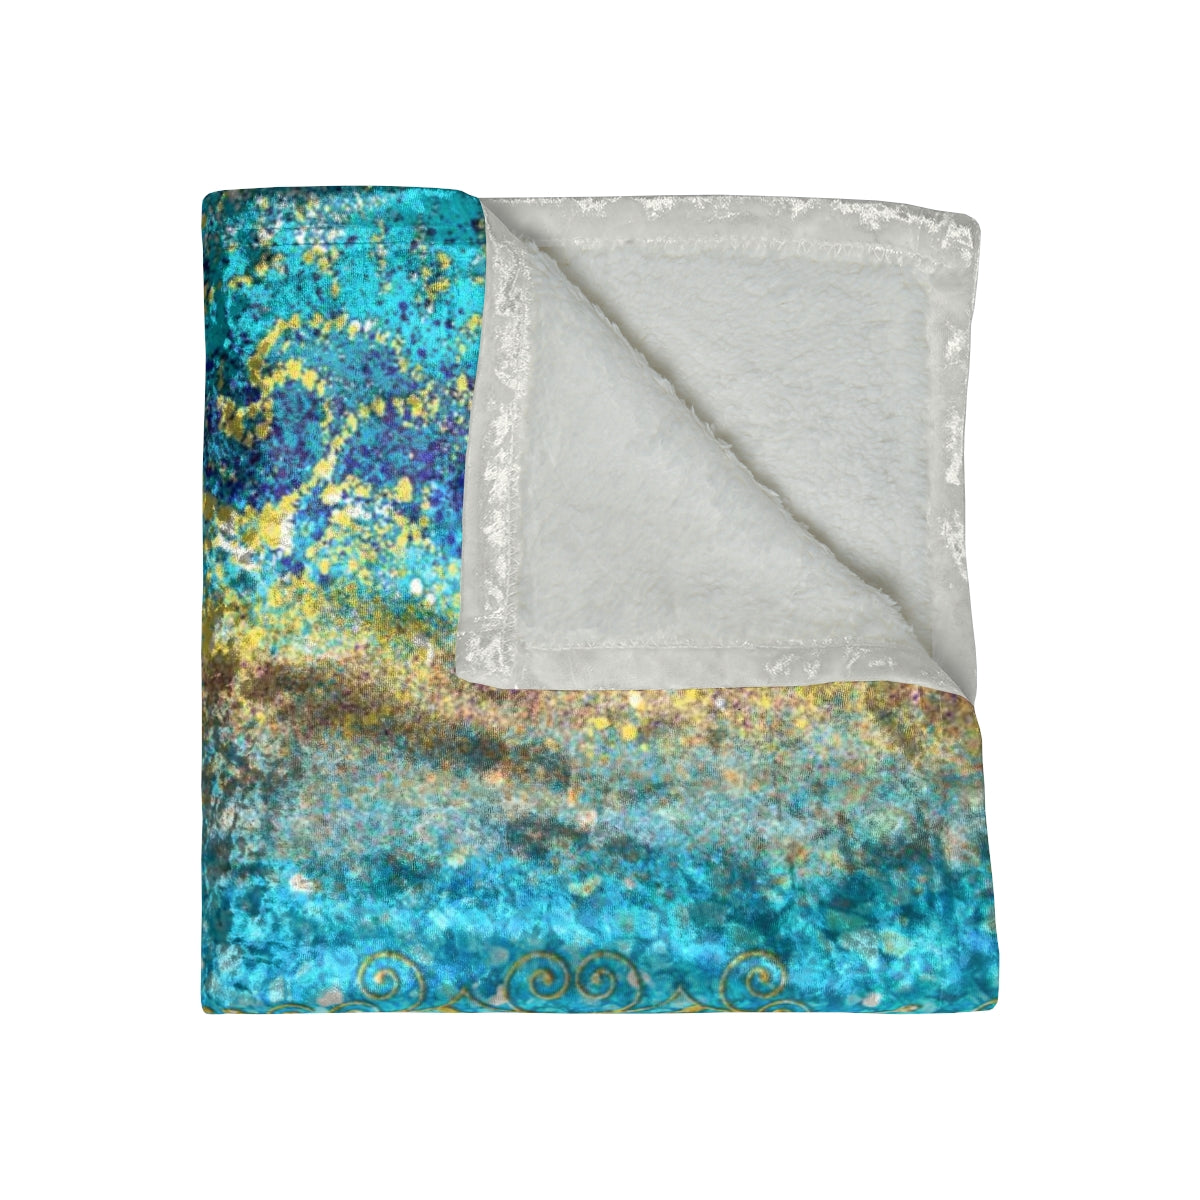 Crushed Velvet Blanket - Royal Turquoise